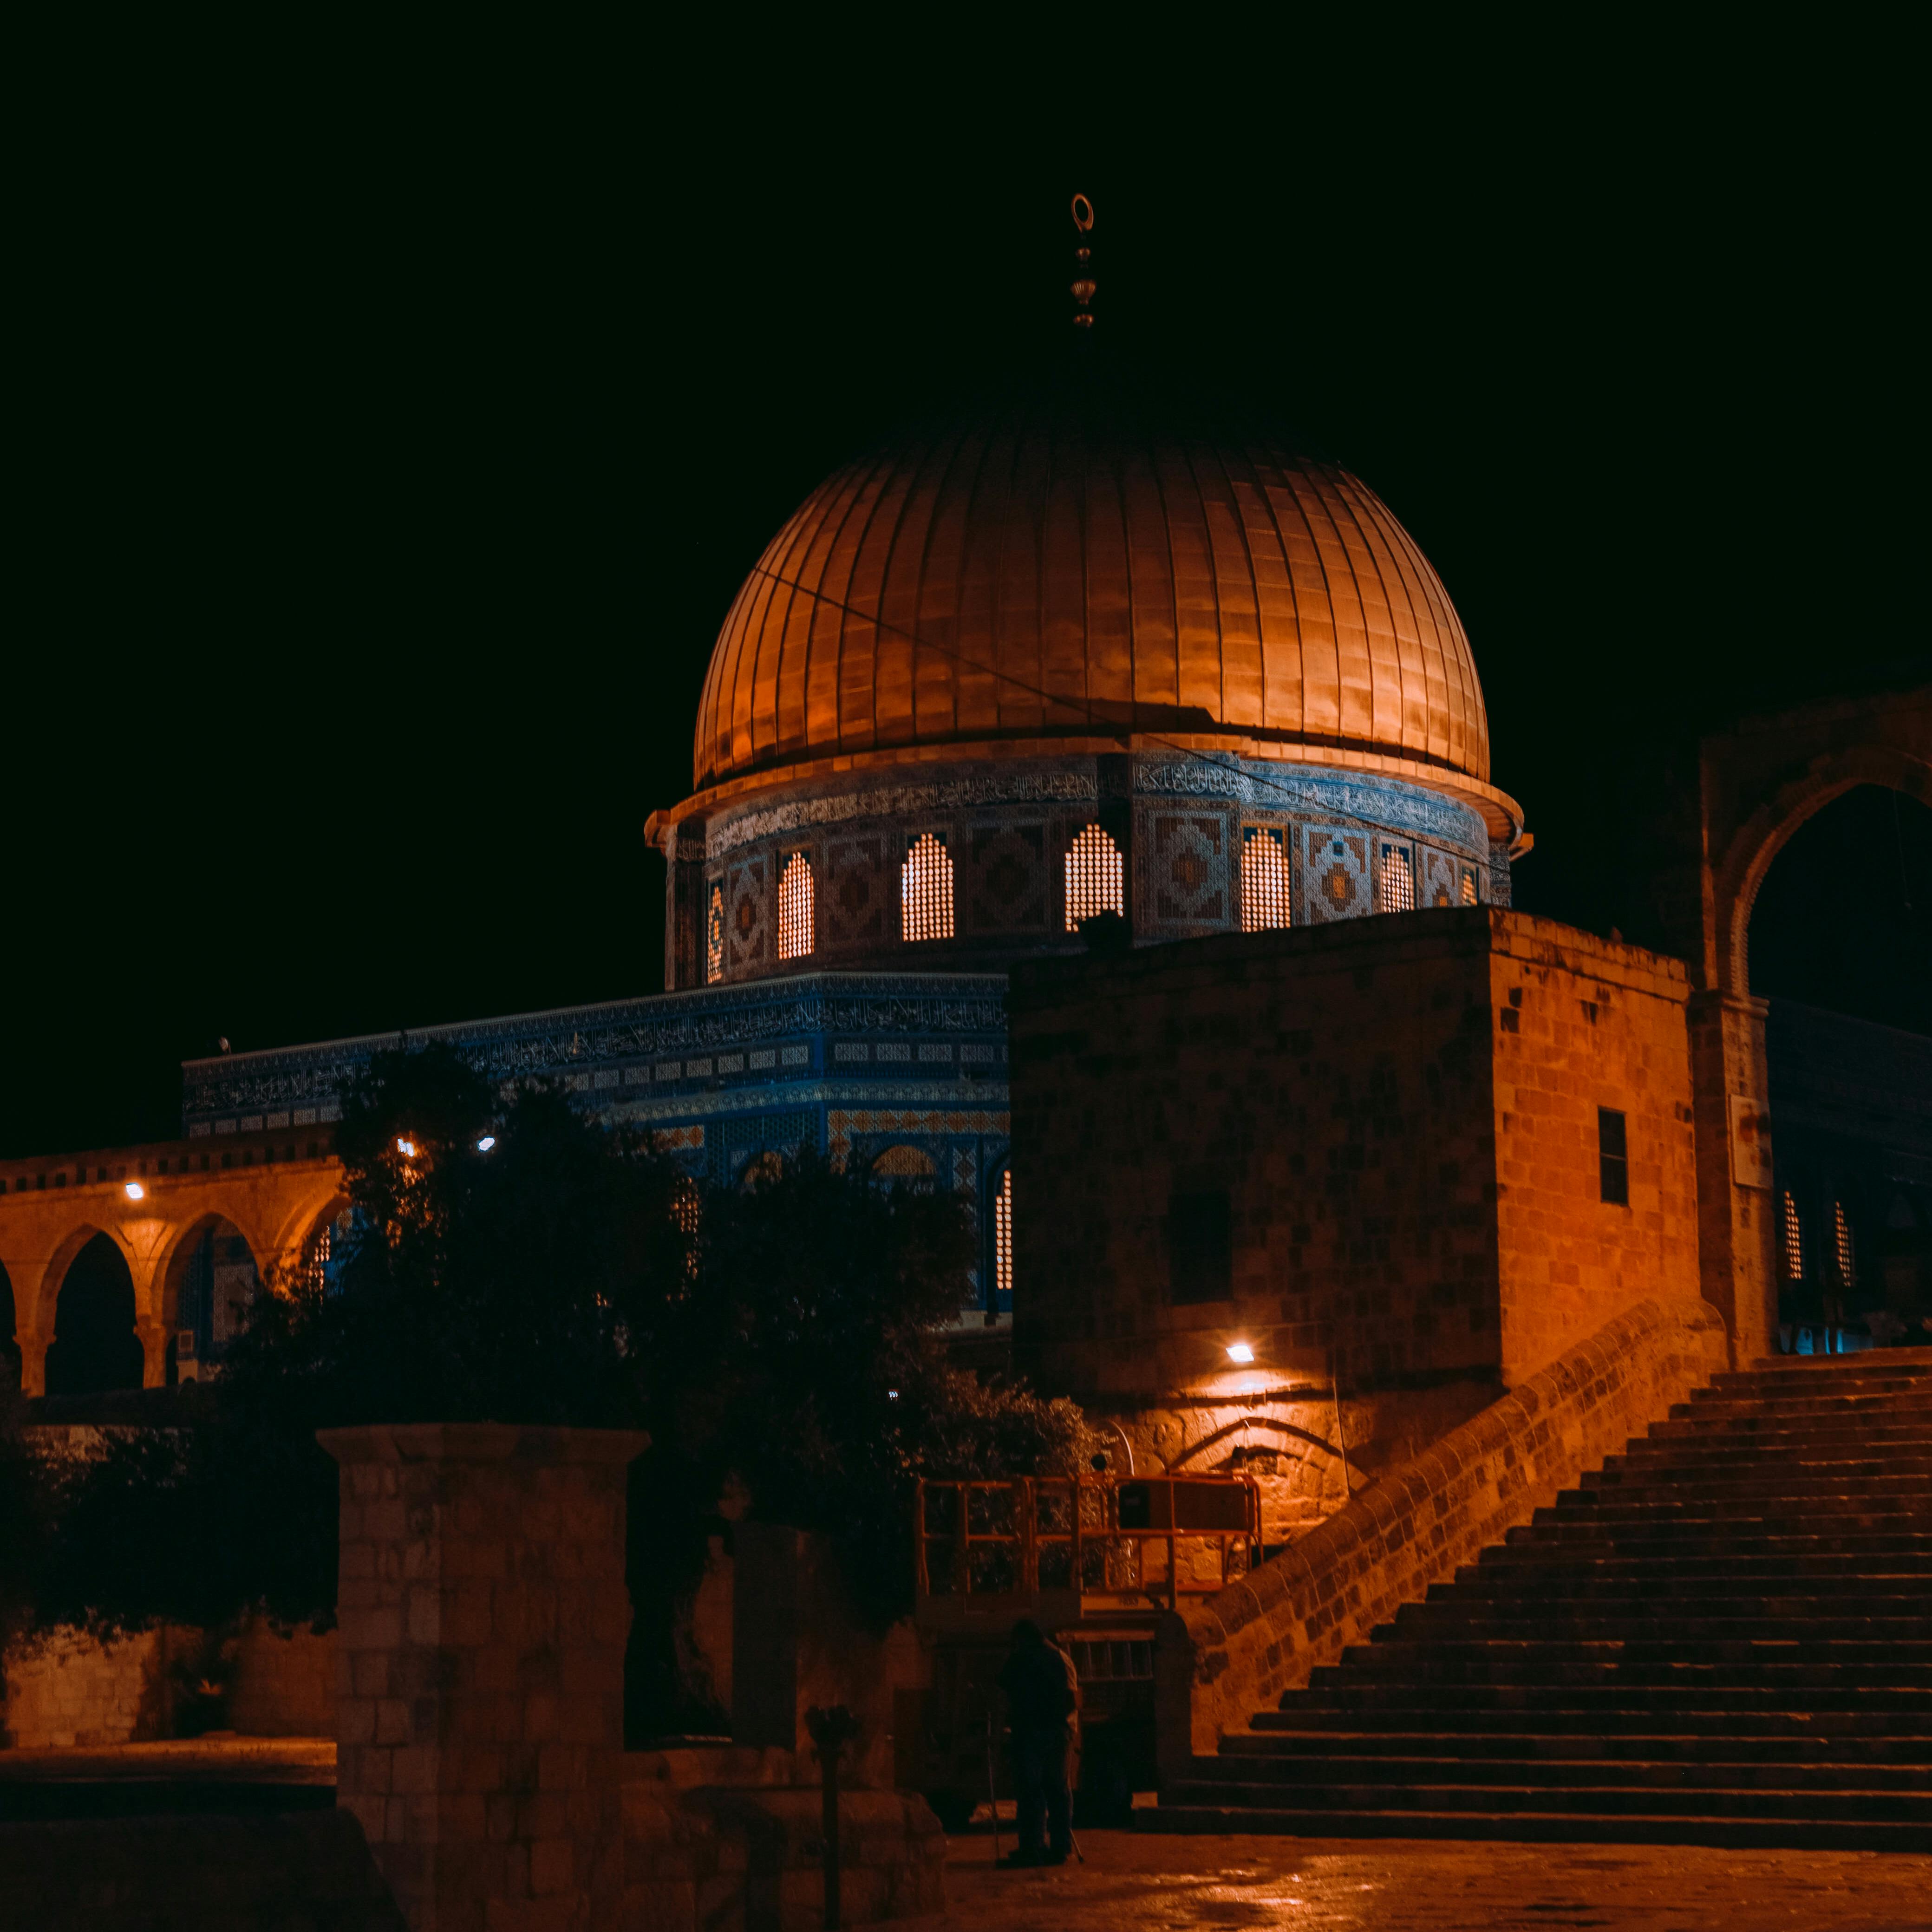 masjid al aqsa